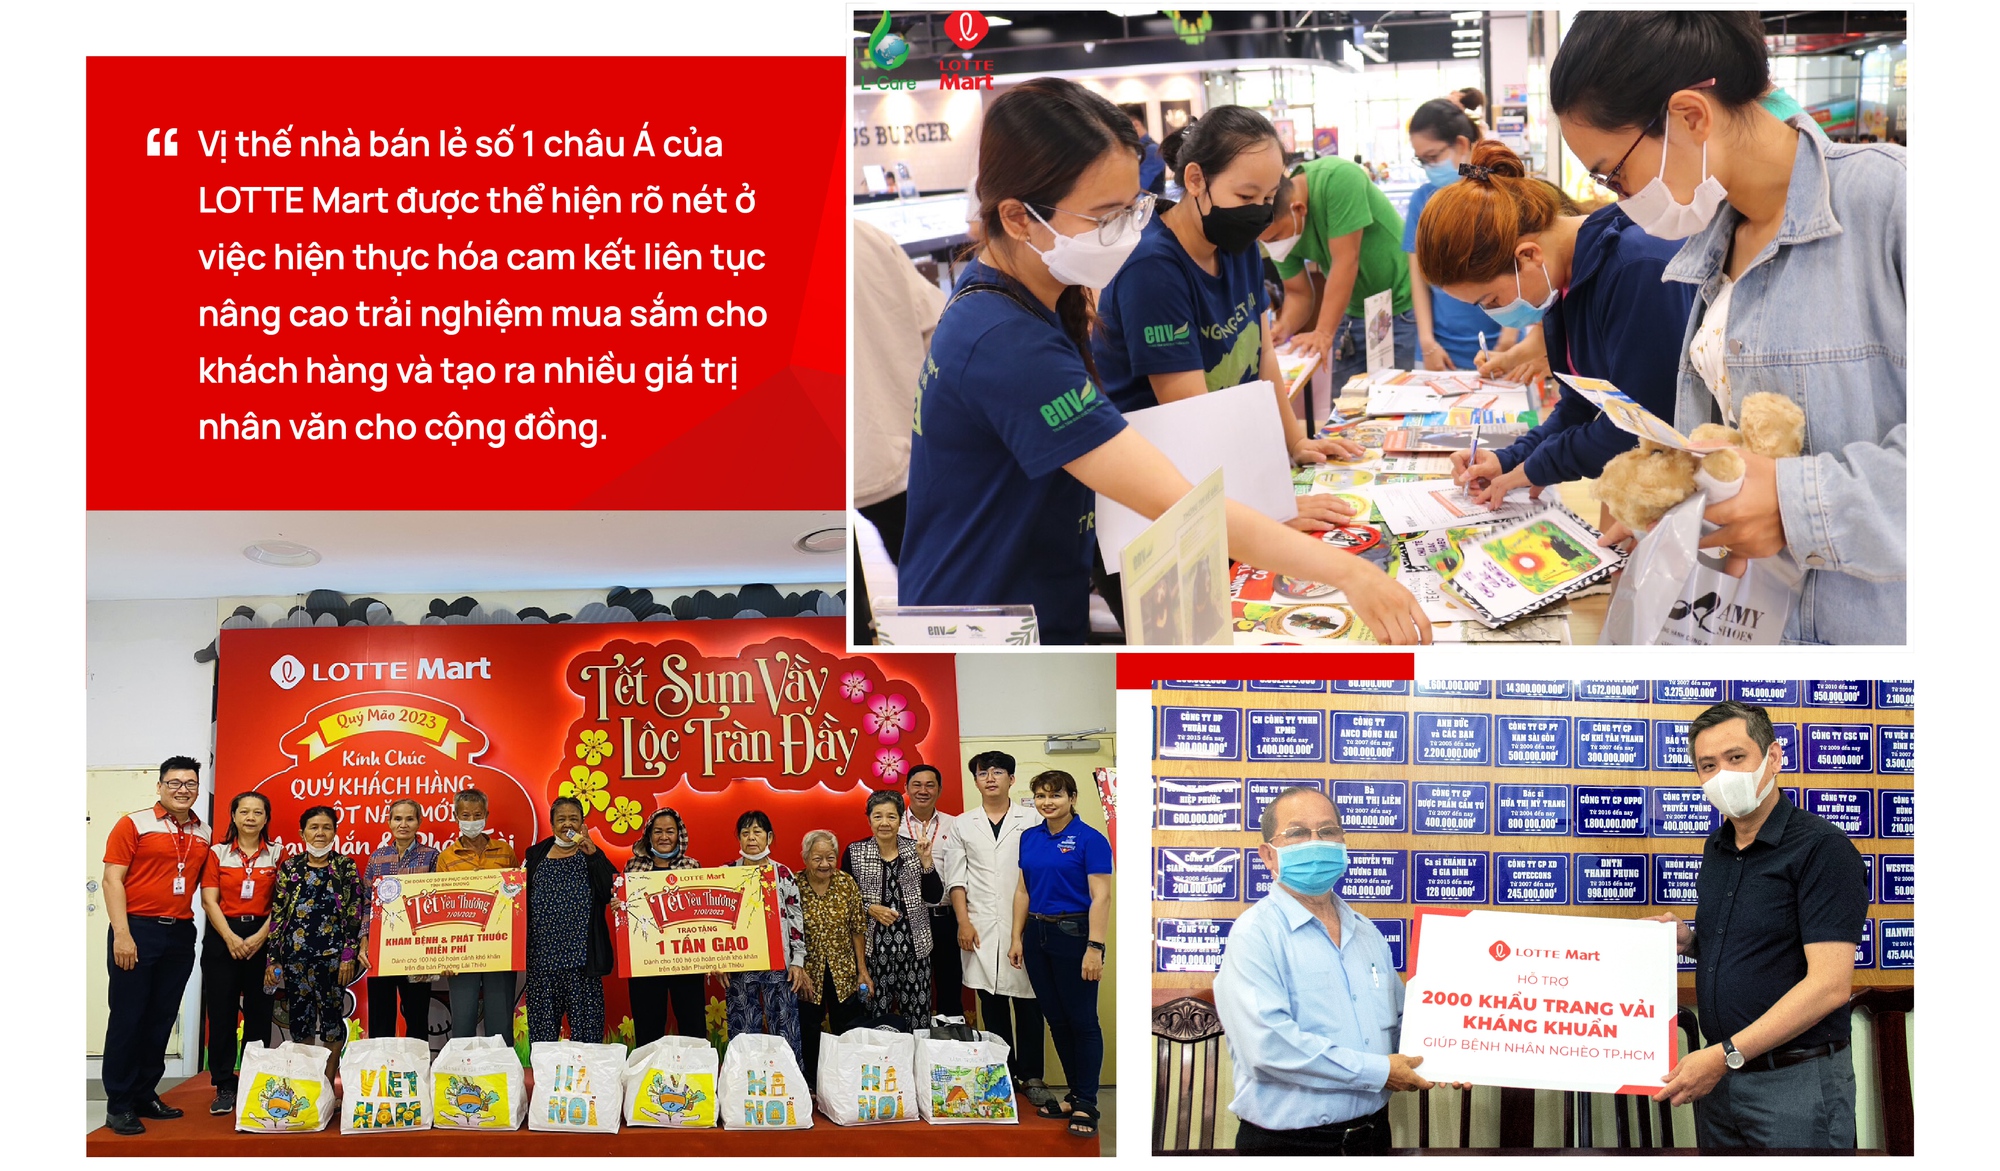 Hành trình 15 năm LOTTE Mart nâng tầm chất lượng cuộc sống người Việt trong dòng chảy xã hội hiện đại - Ảnh 10.